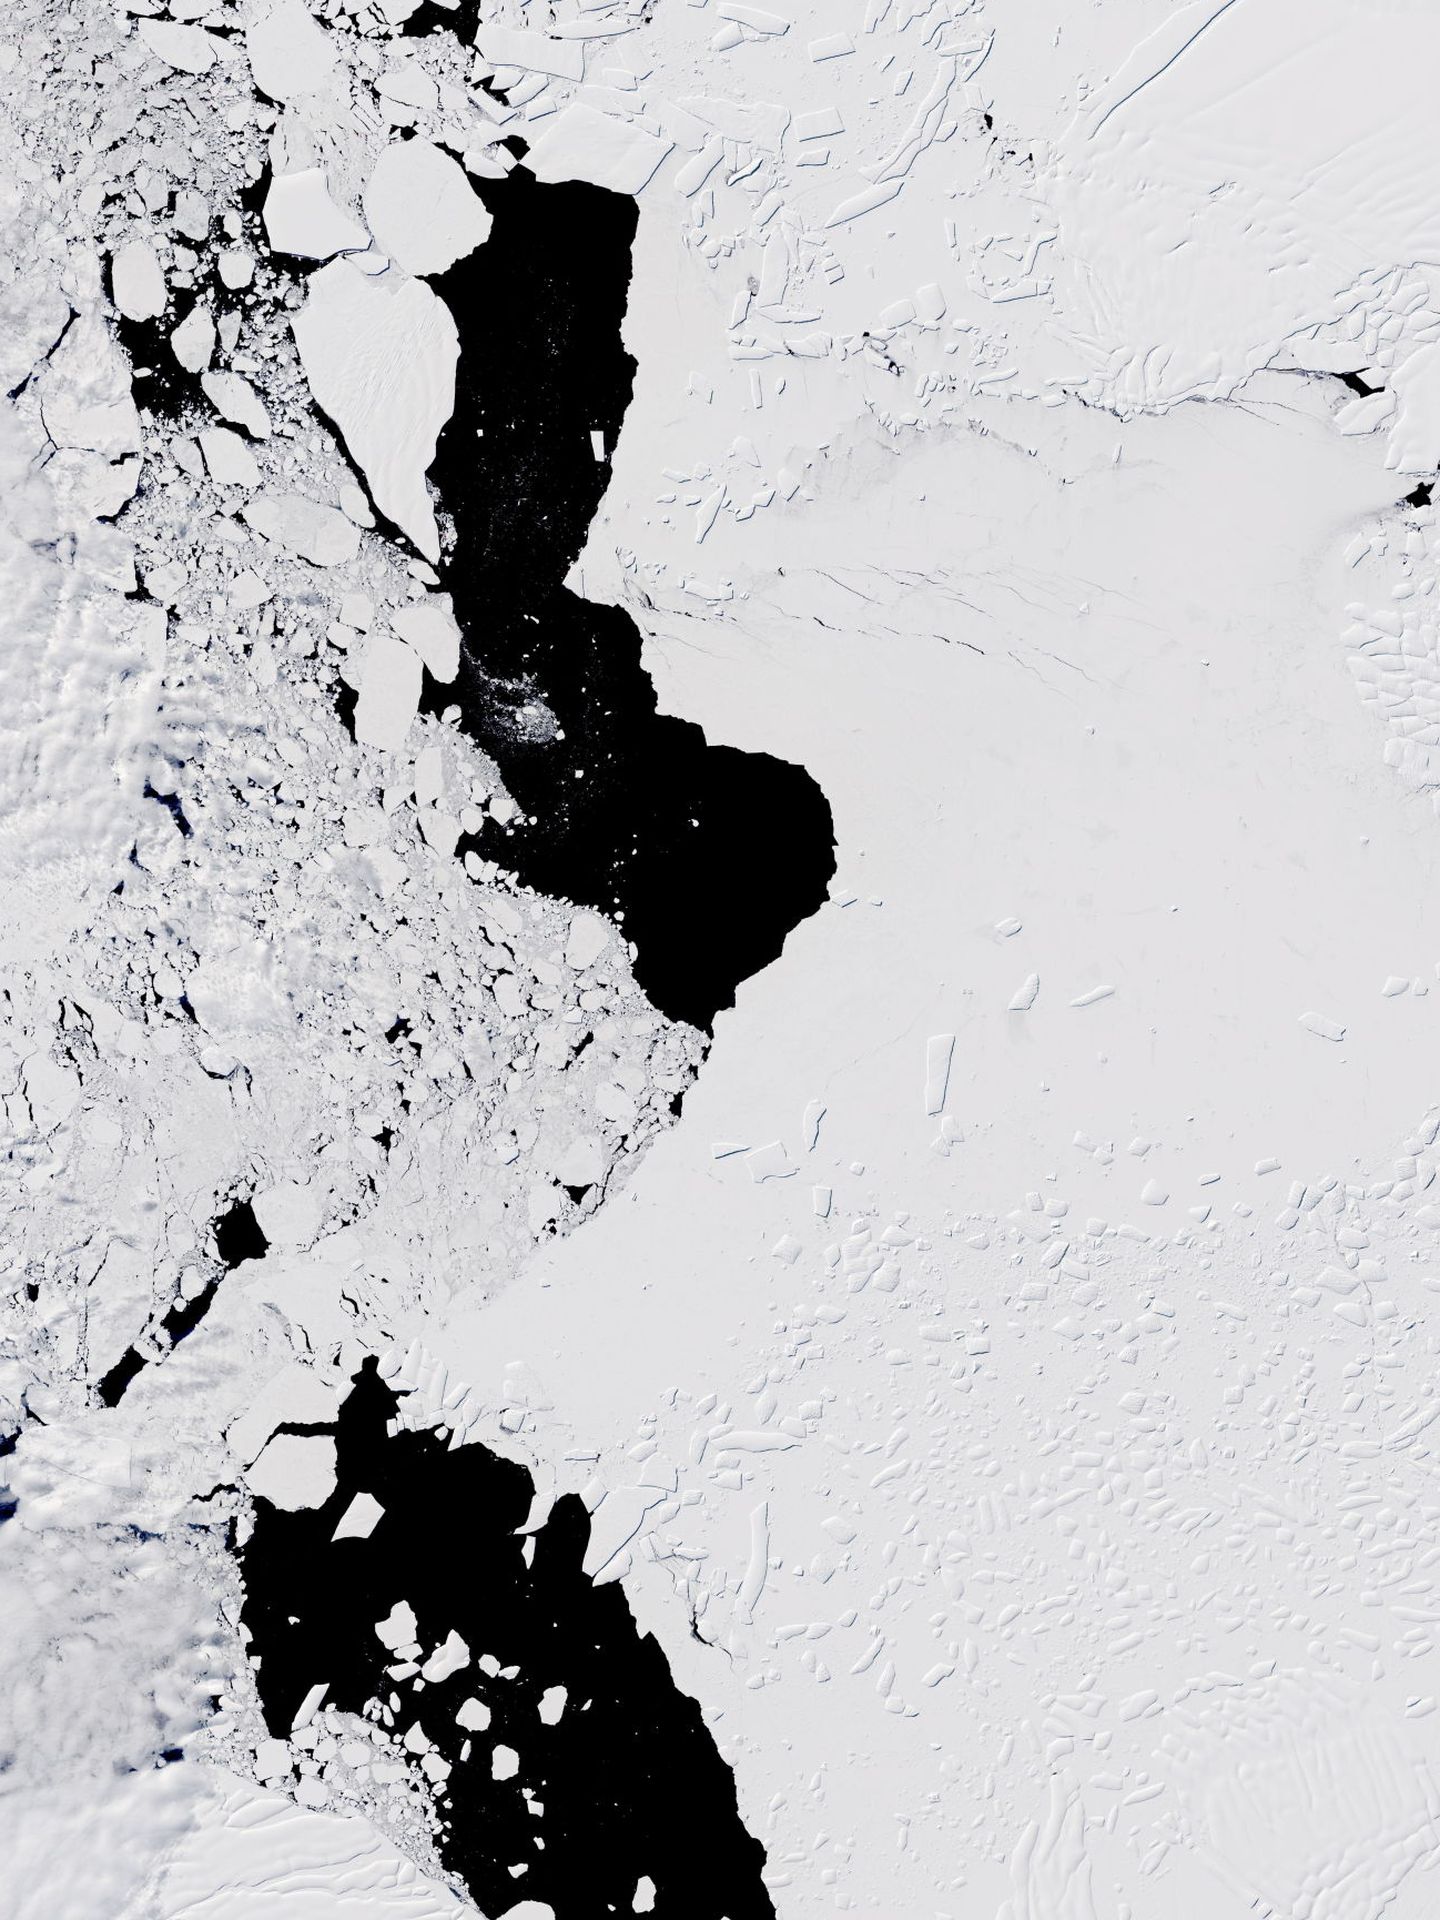 La perdida de parte del glaciar puede hacer que el resto caiga rápidamente. (EFE)